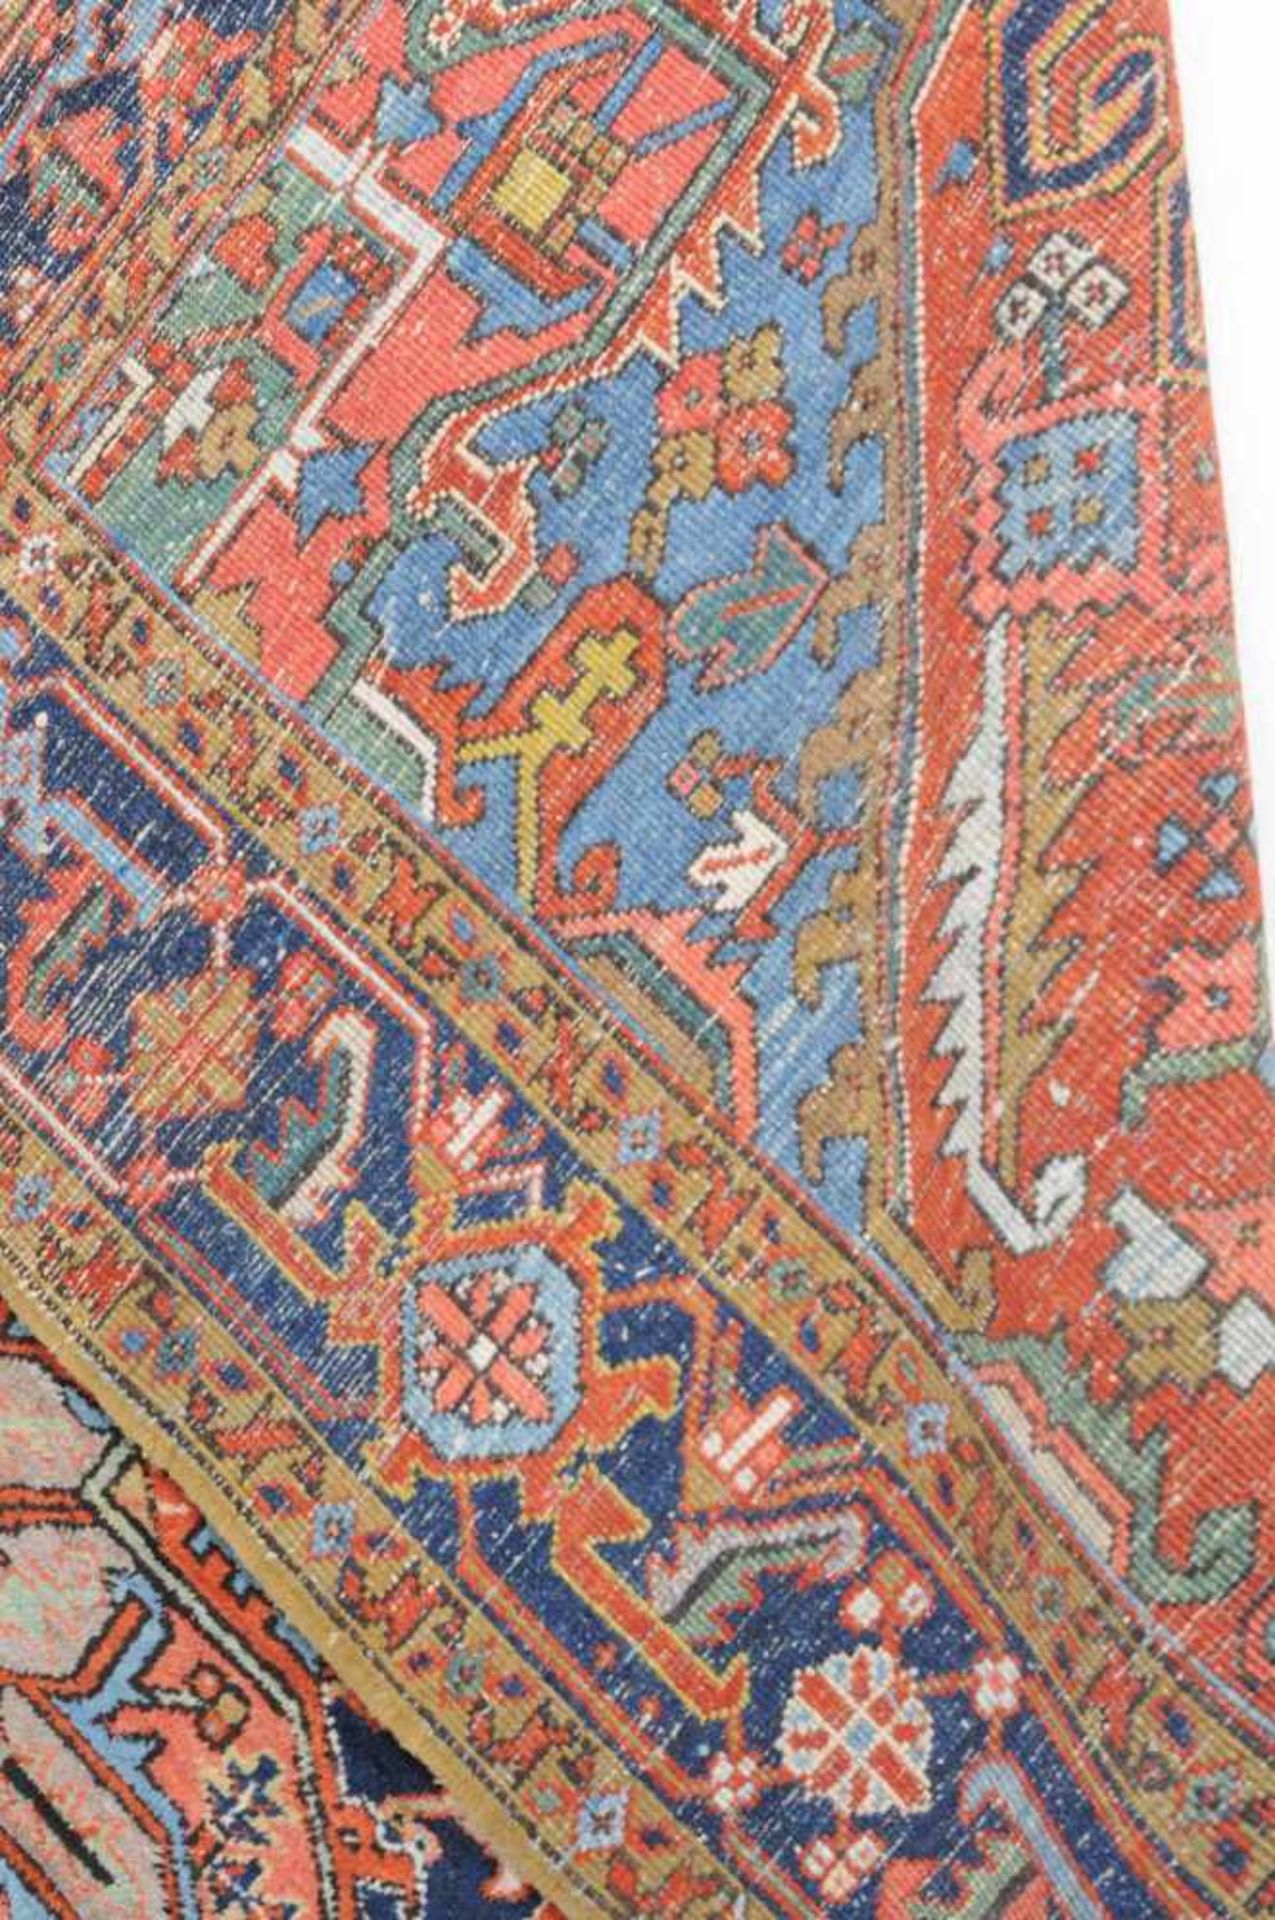 Heriz NW-Persien, um 1910. Im ziegelroten Mittelfeld liegt ein prachtvolles nachtblaues Heriz- - Bild 8 aus 11